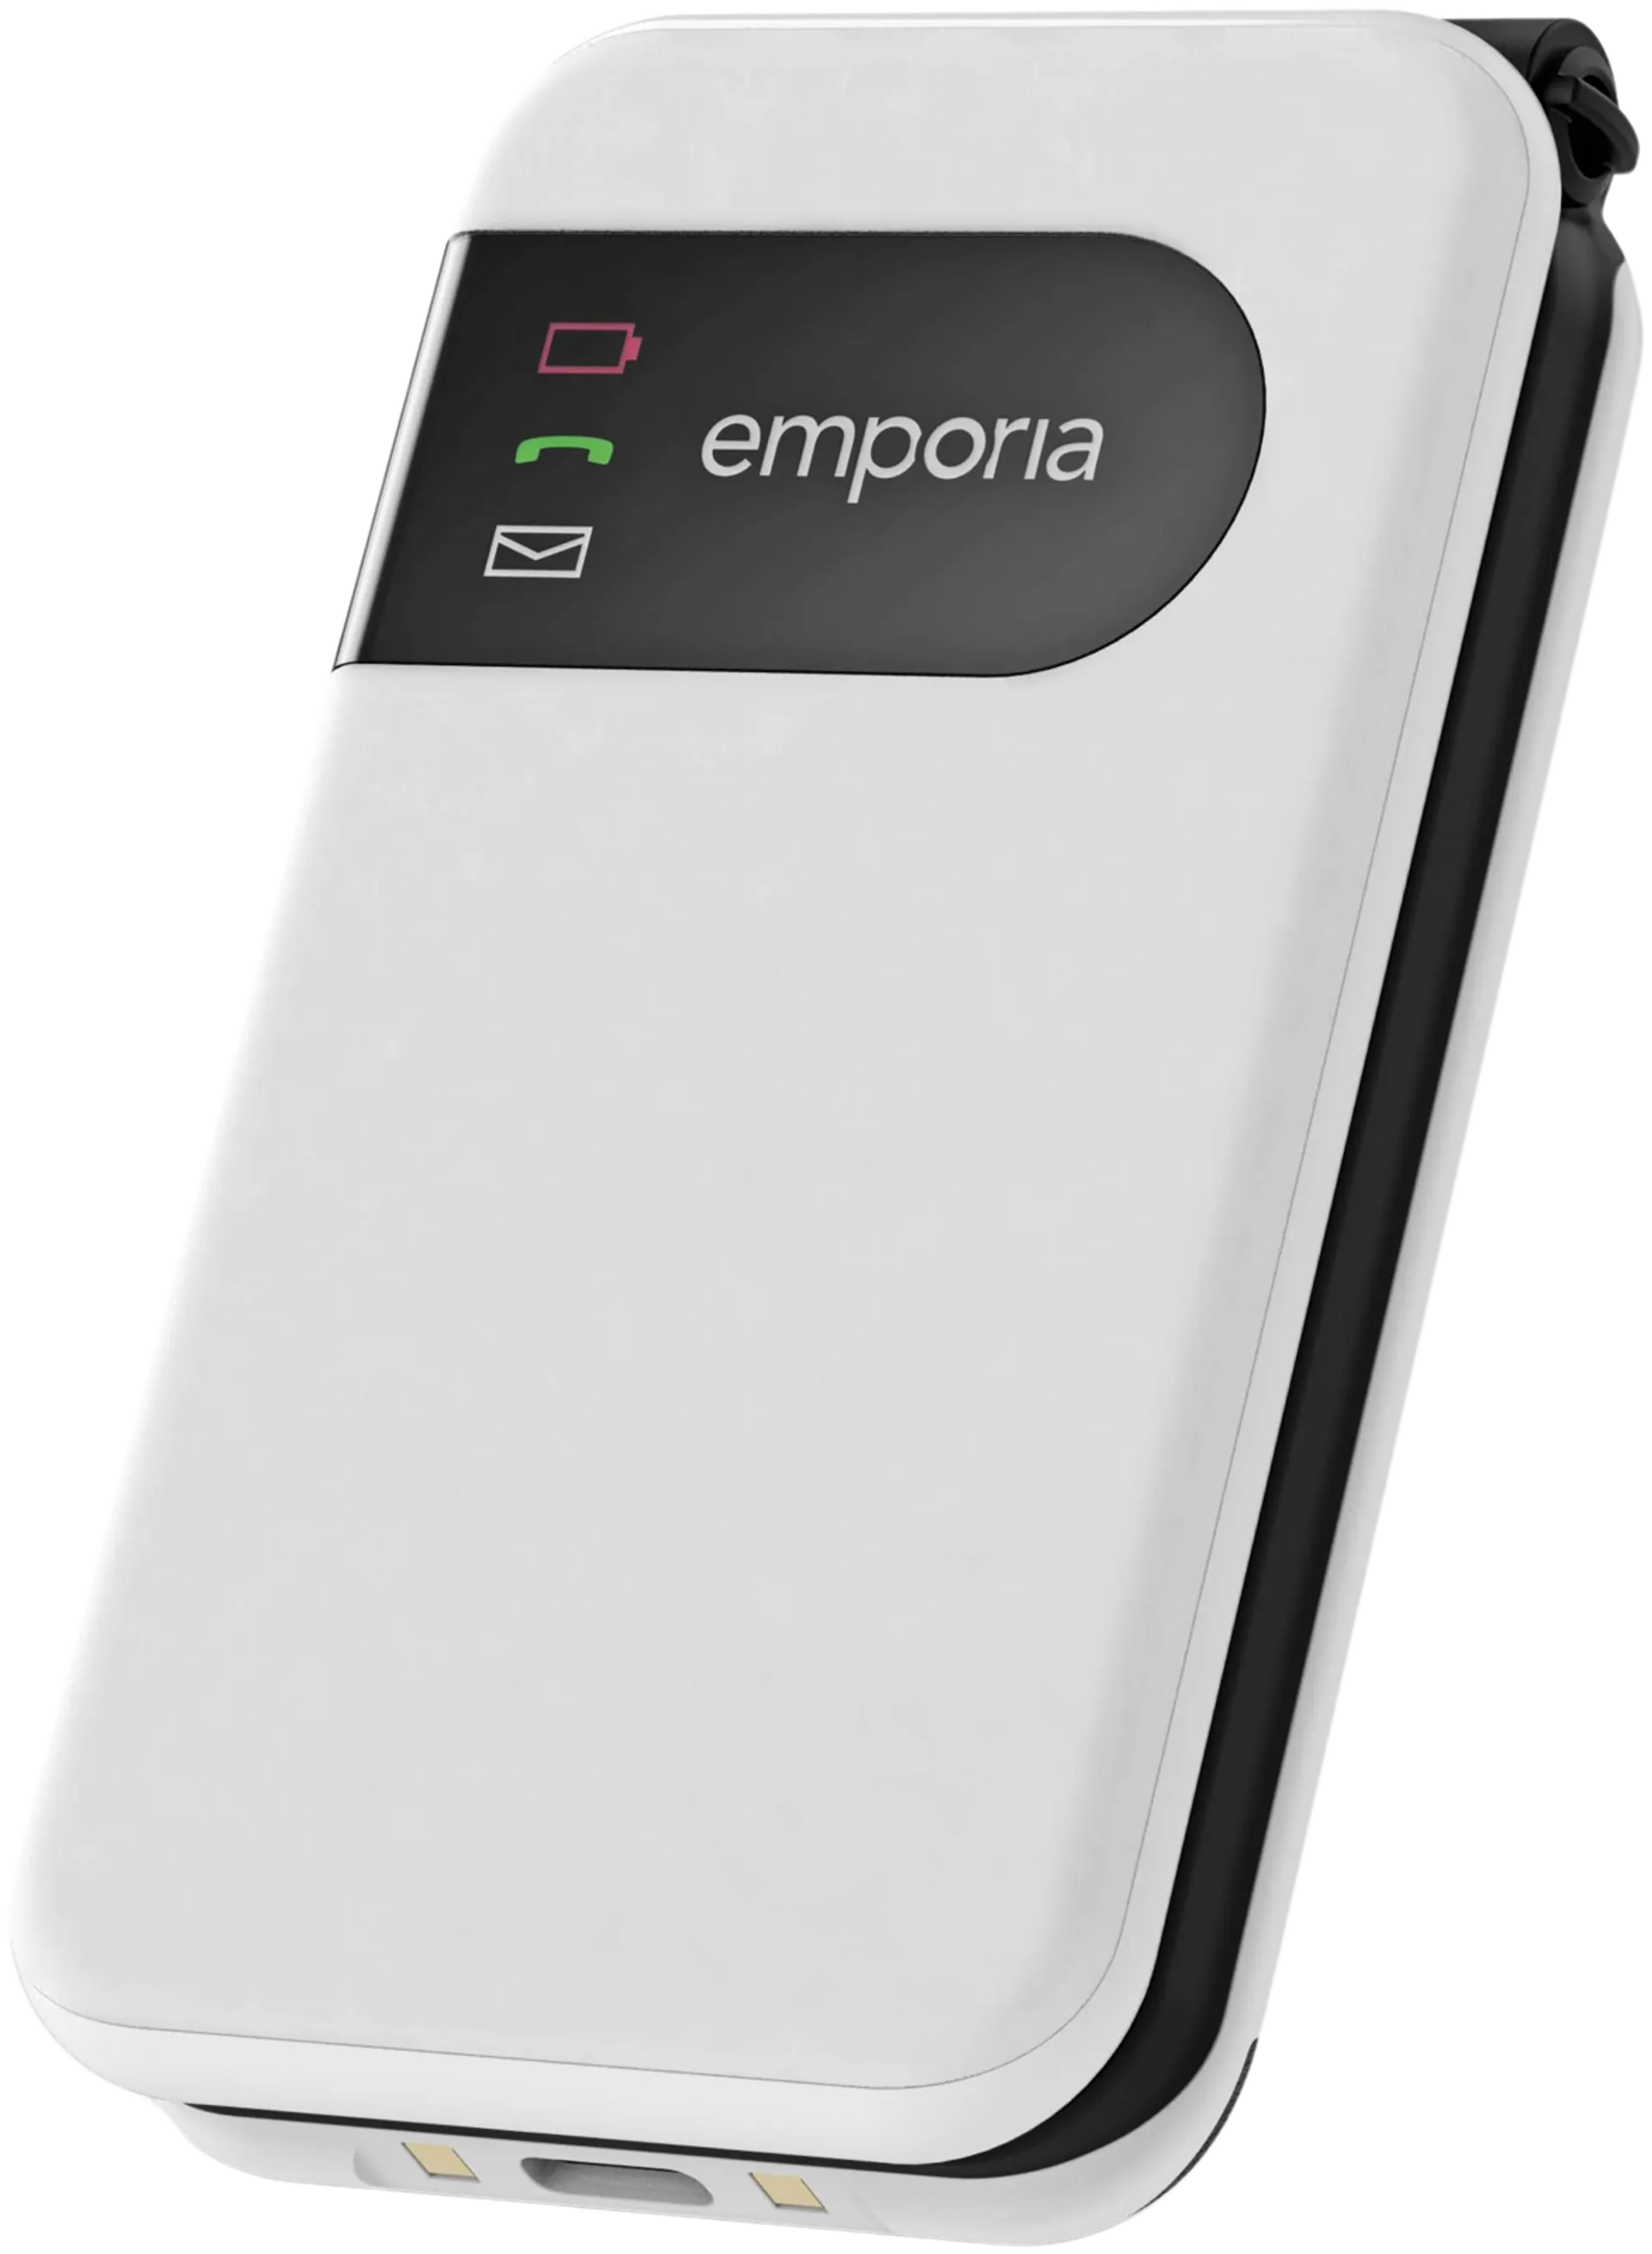 Emporia Simplicity Glam 4G puhelin, valkoinen - 2